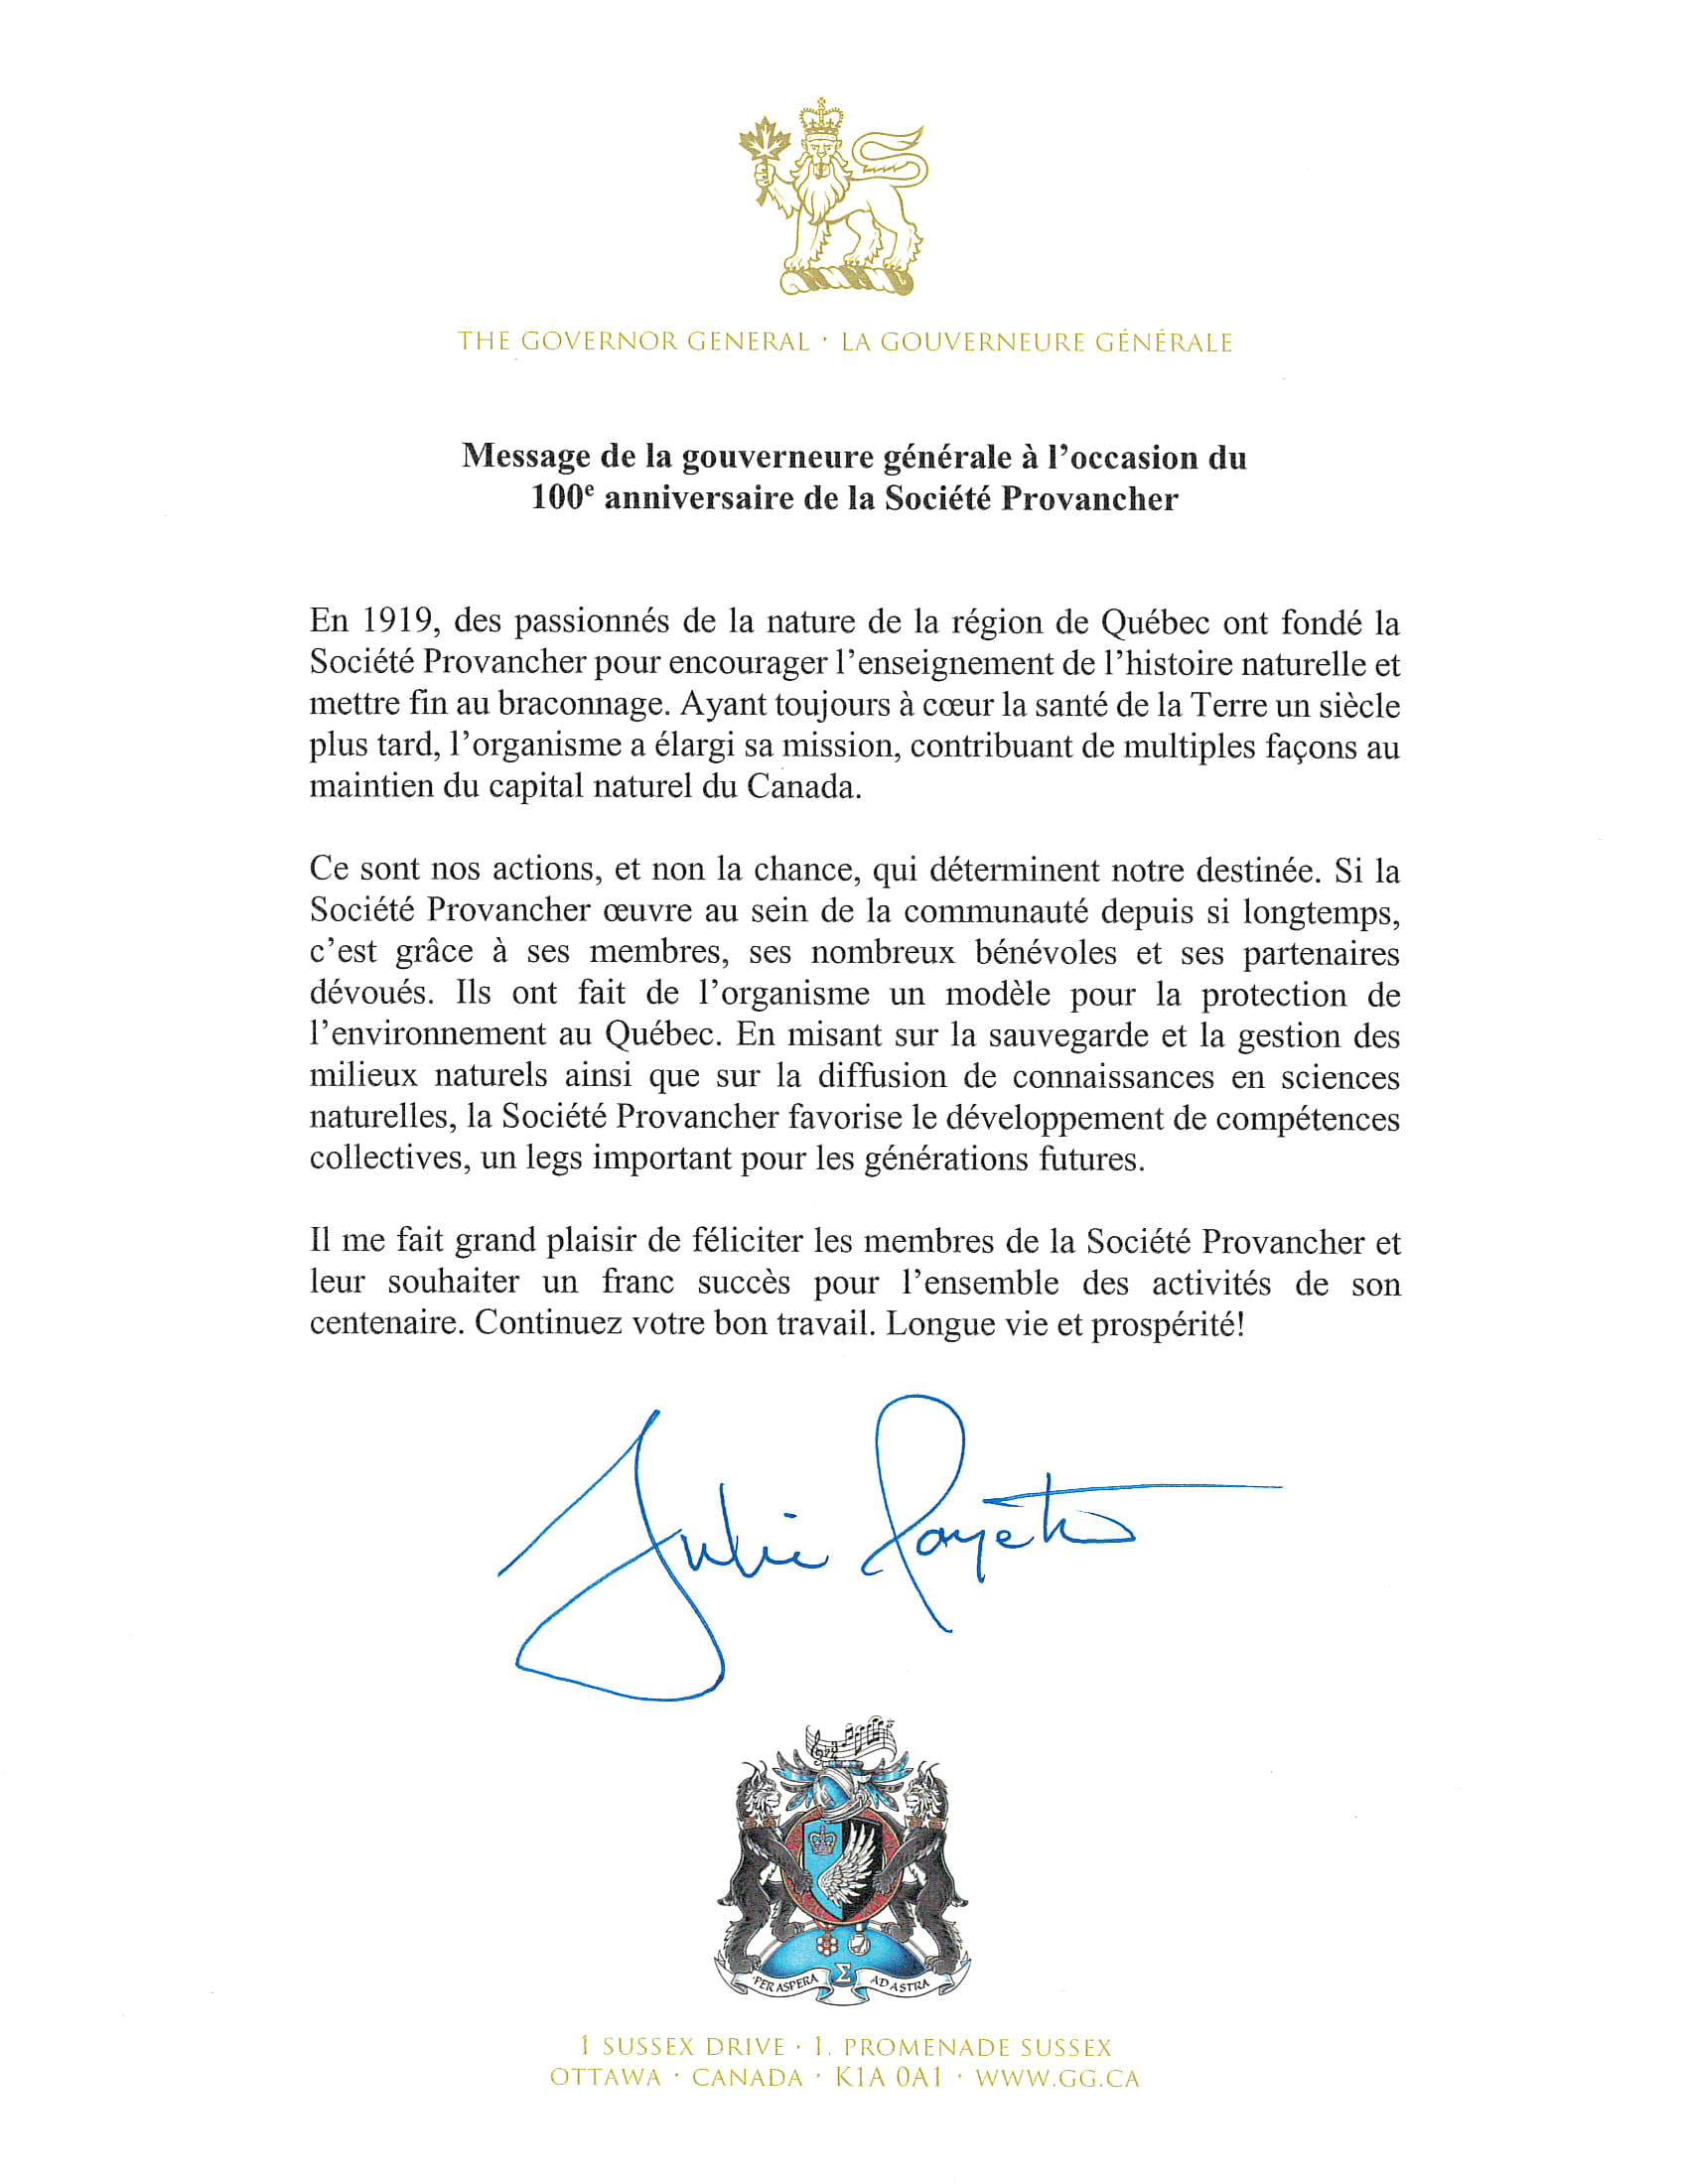 Message de Son Excellence la très honorable Julie Payette, gouverneure générale et commandante en chef du Canada.